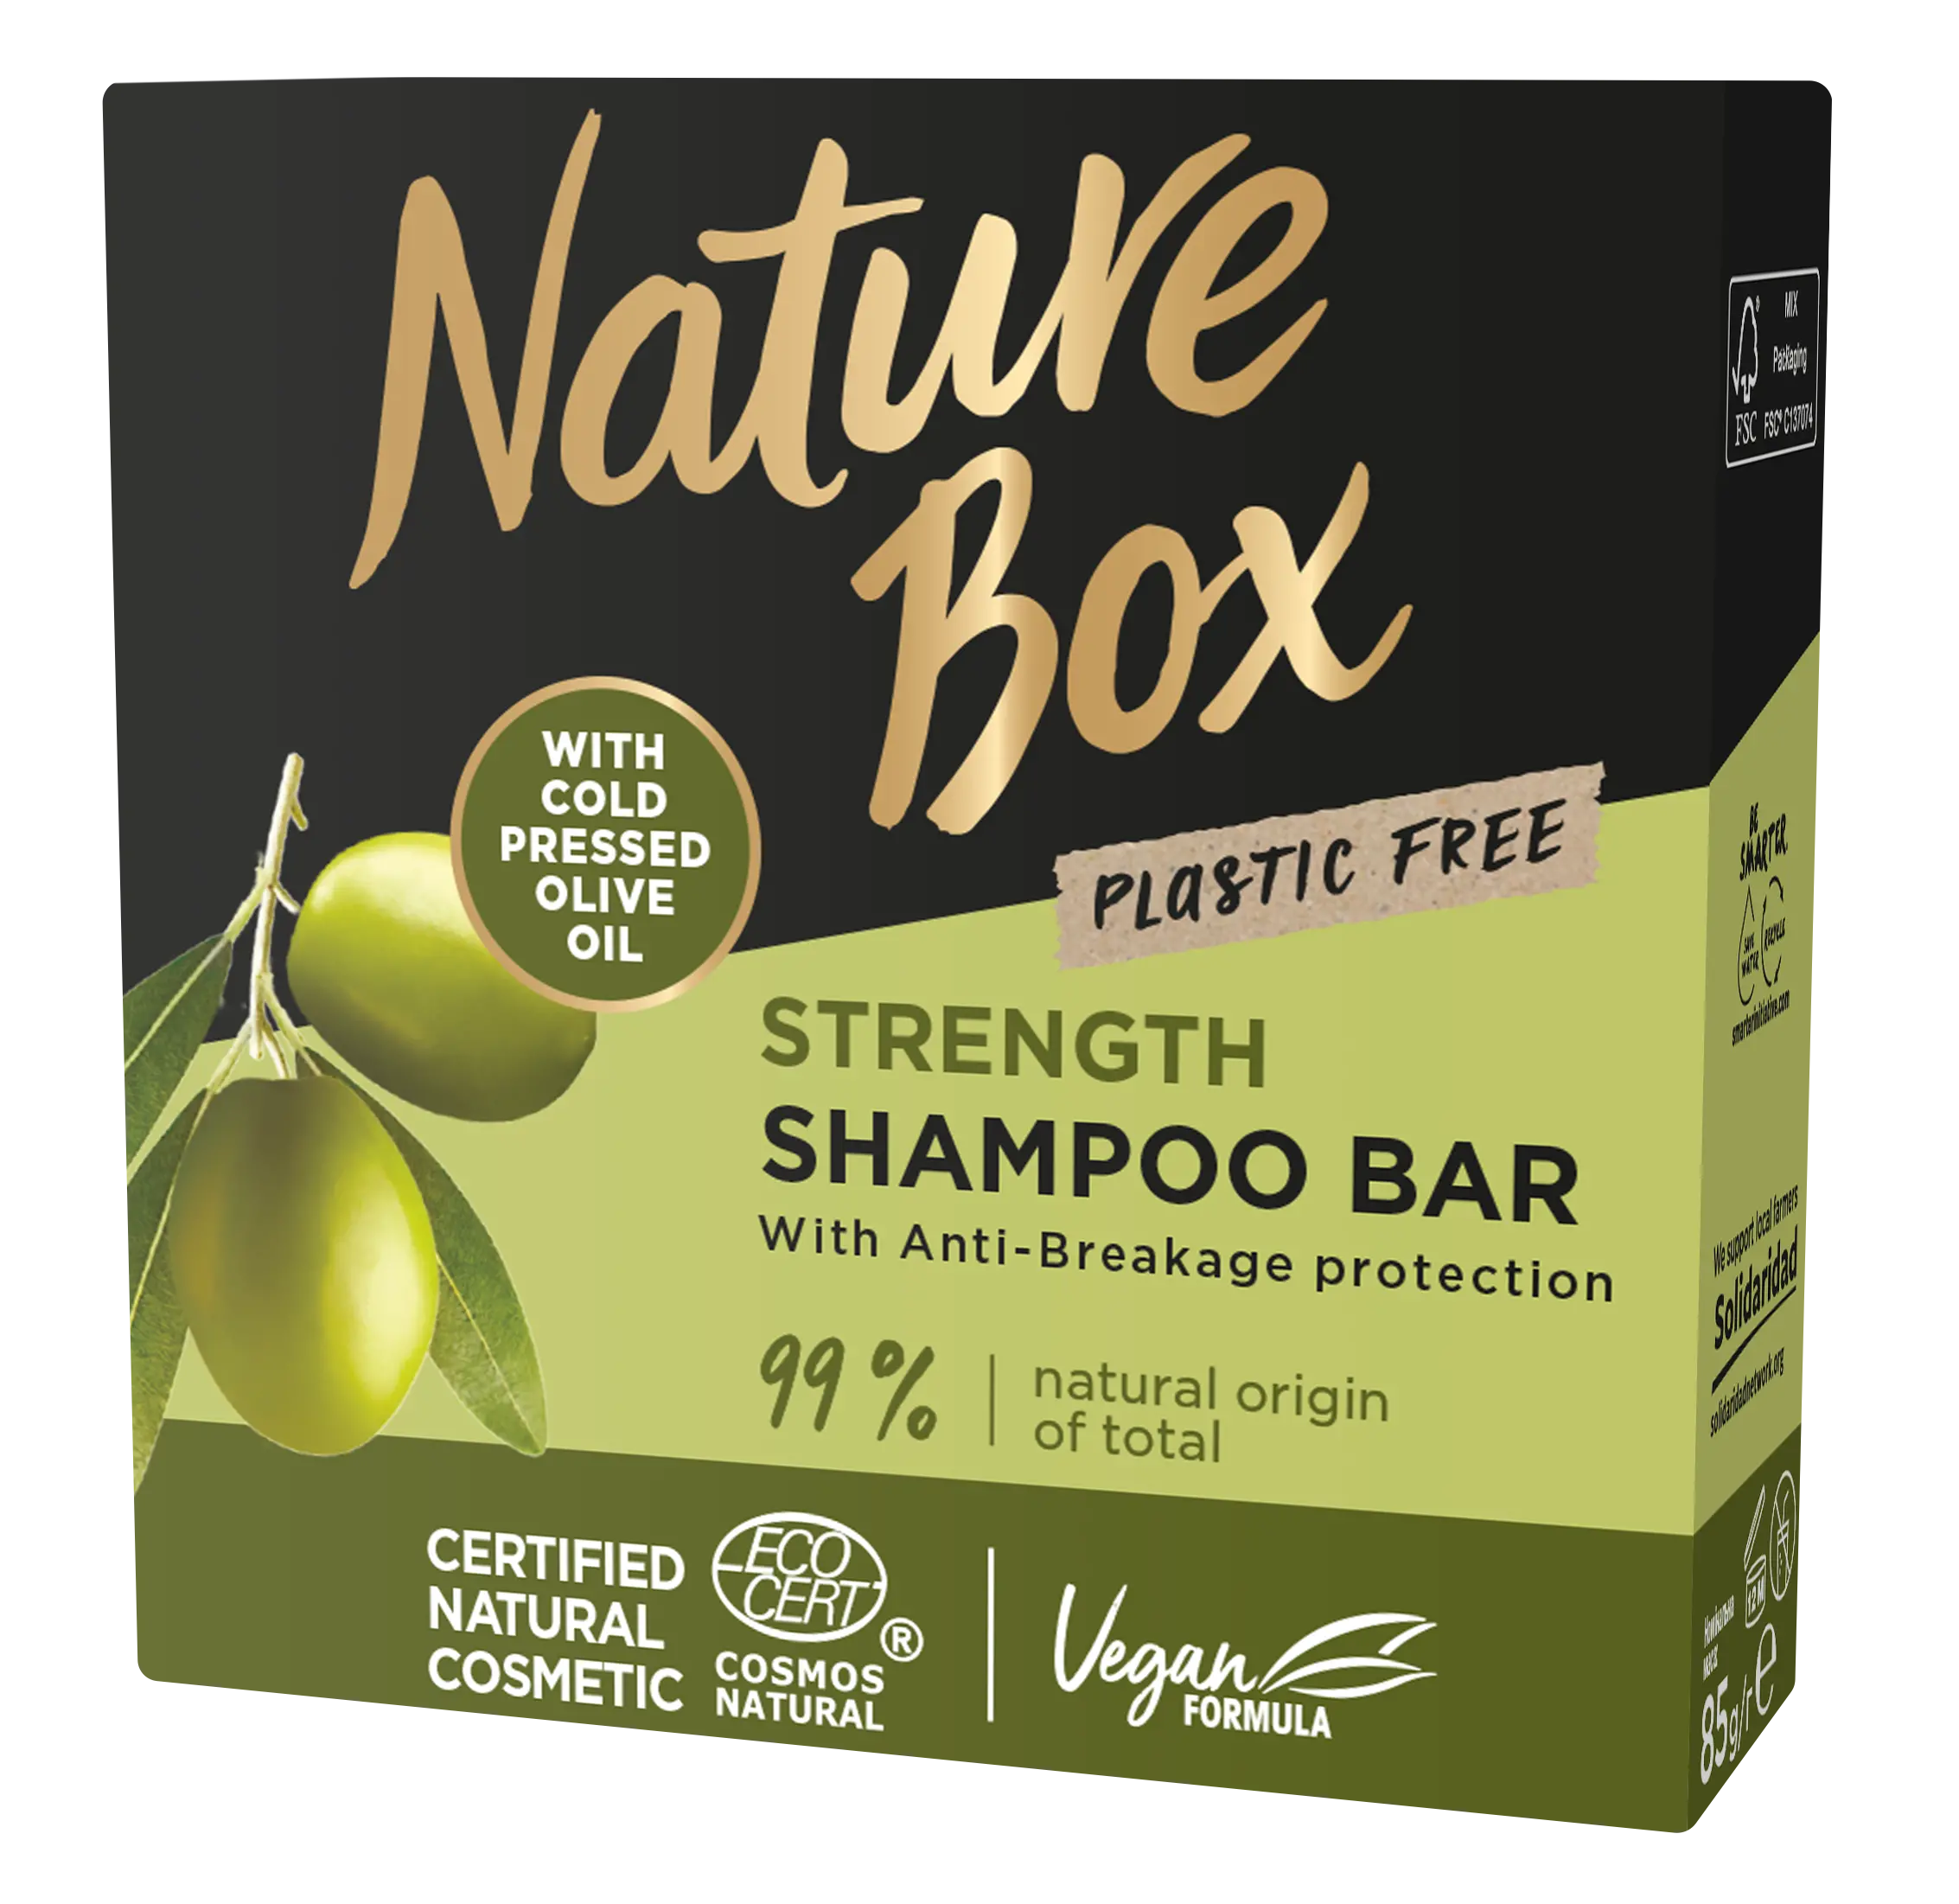 Твердый шампунь Nature Box Olive Oil, для укрепления длинных волос и противодействия ломкости, с оливковым маслом холодного отжима, 85 г